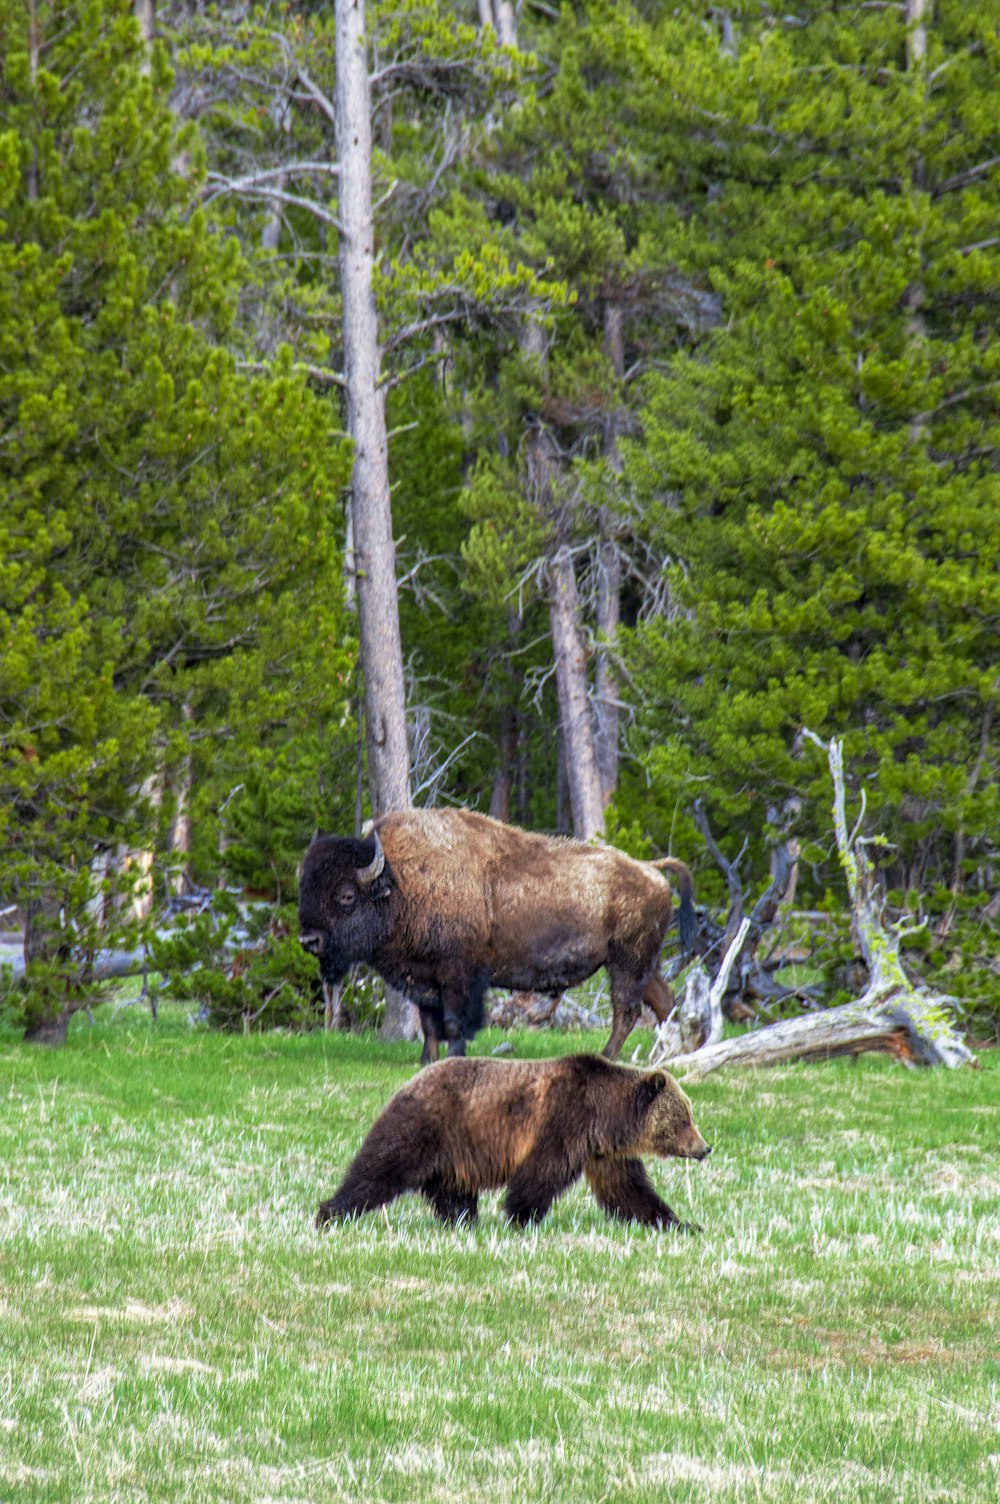 갈색 회색곰 근처에 서 있는 갈색 들소